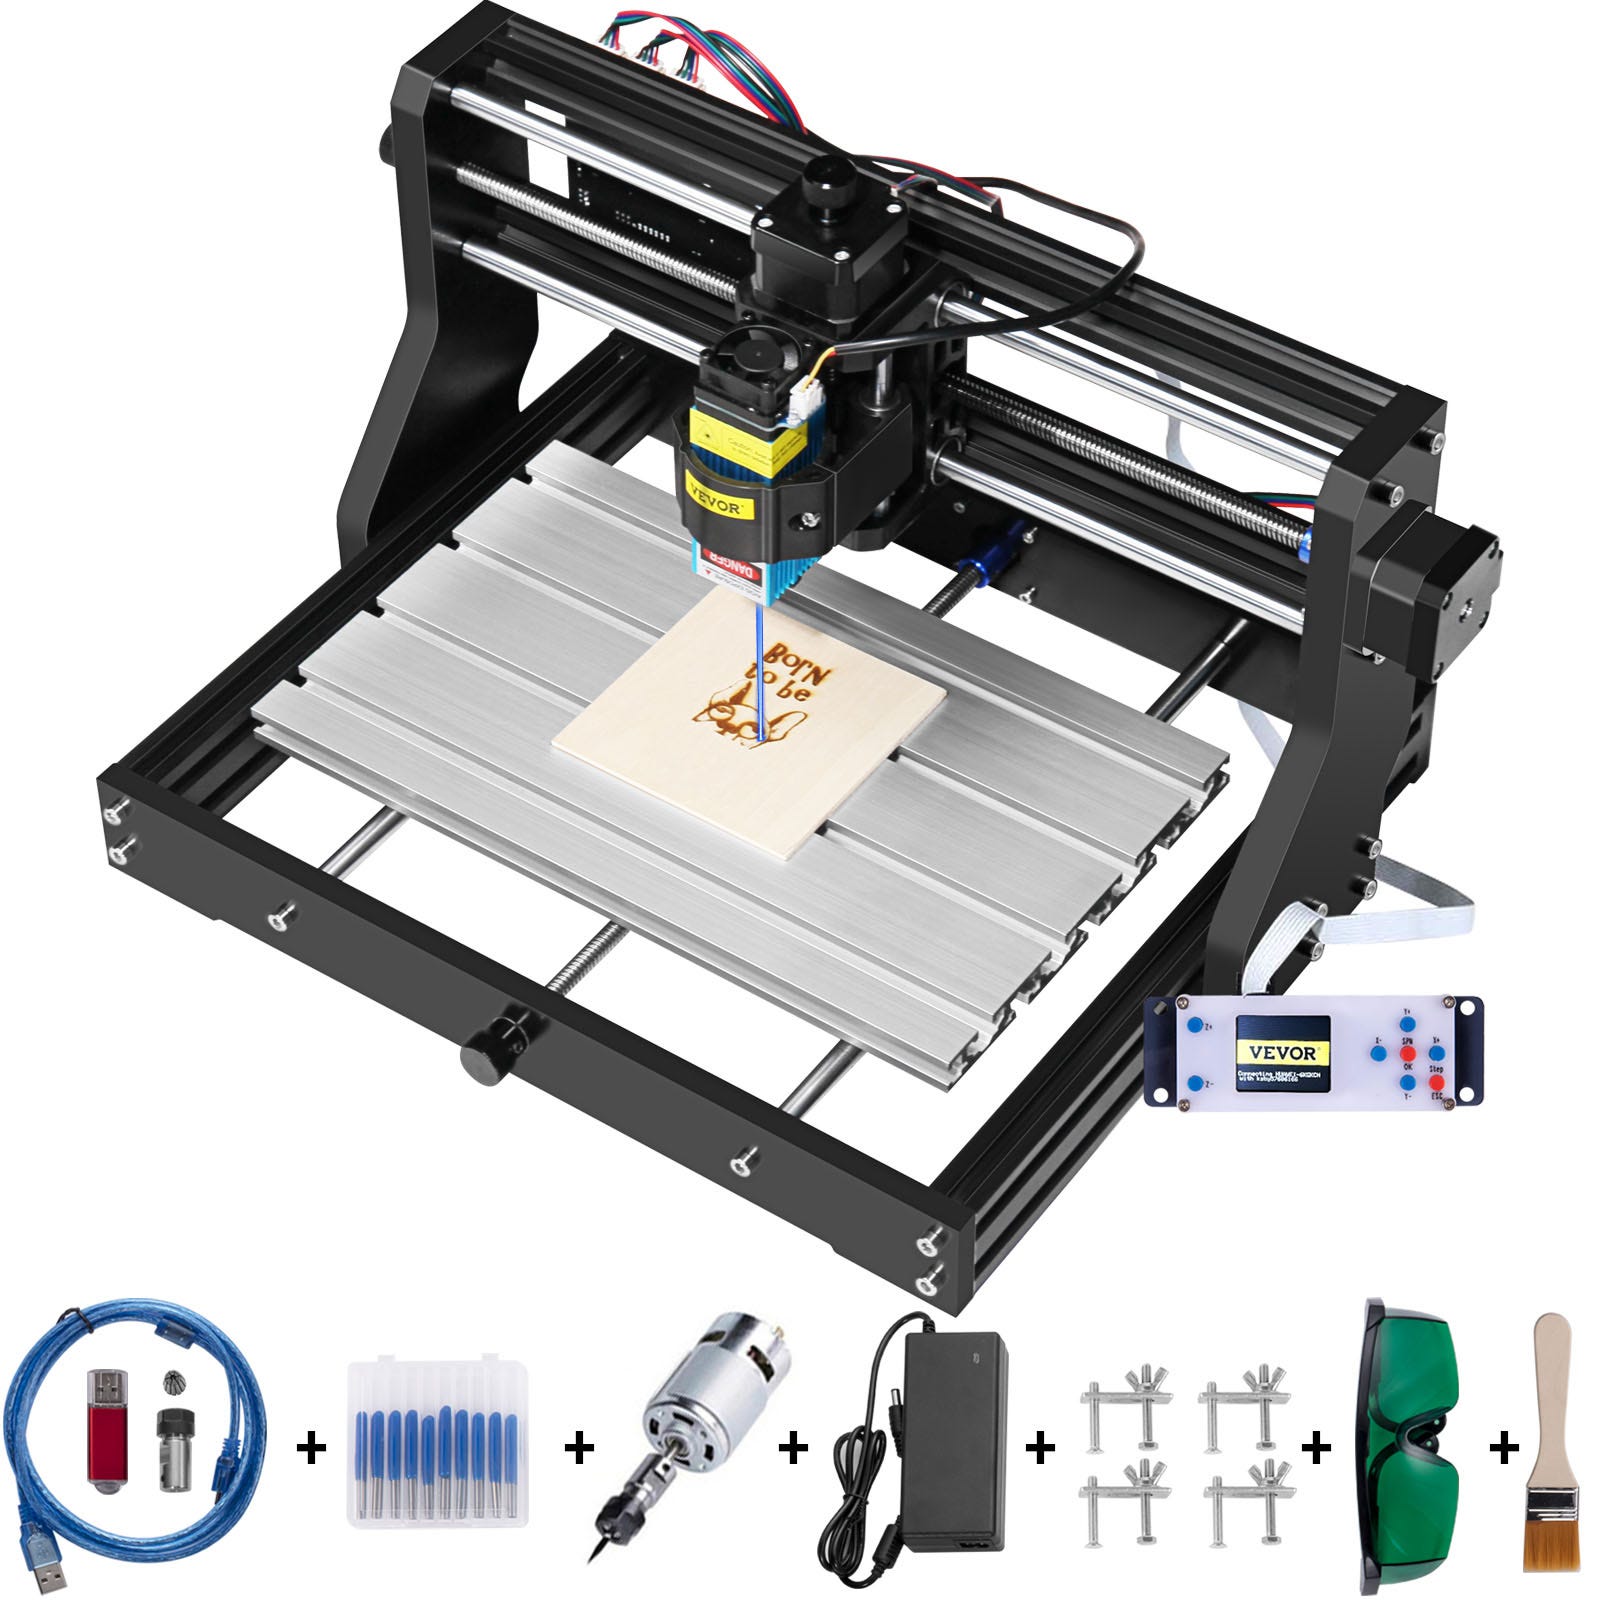 Gearberry : matériel imprimante 3D et graveur en réduction !